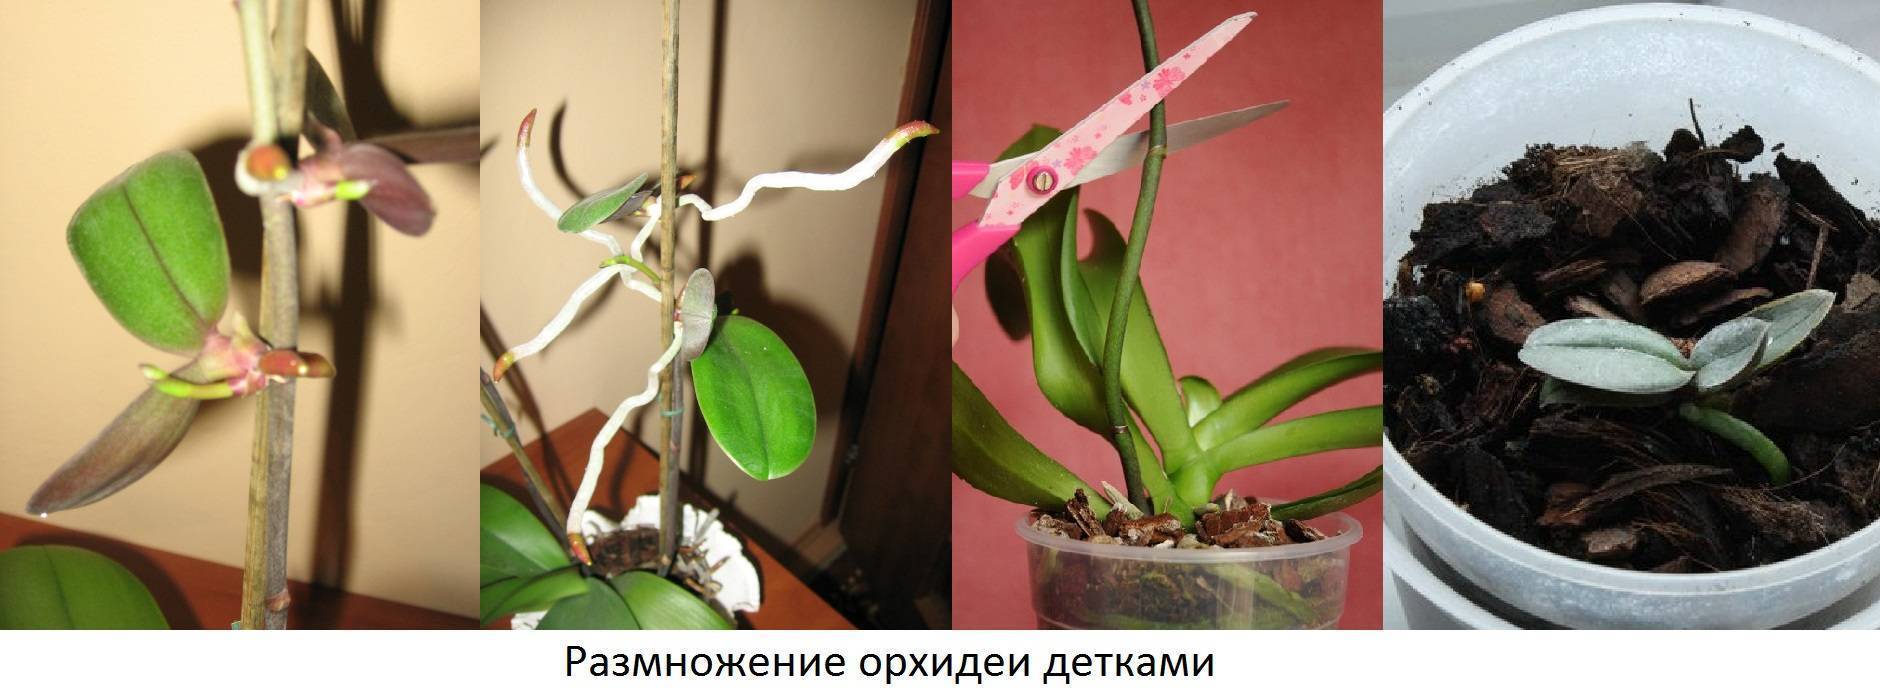 Орхидея уход в домашних условиях: варианты размножения и посадки цветка